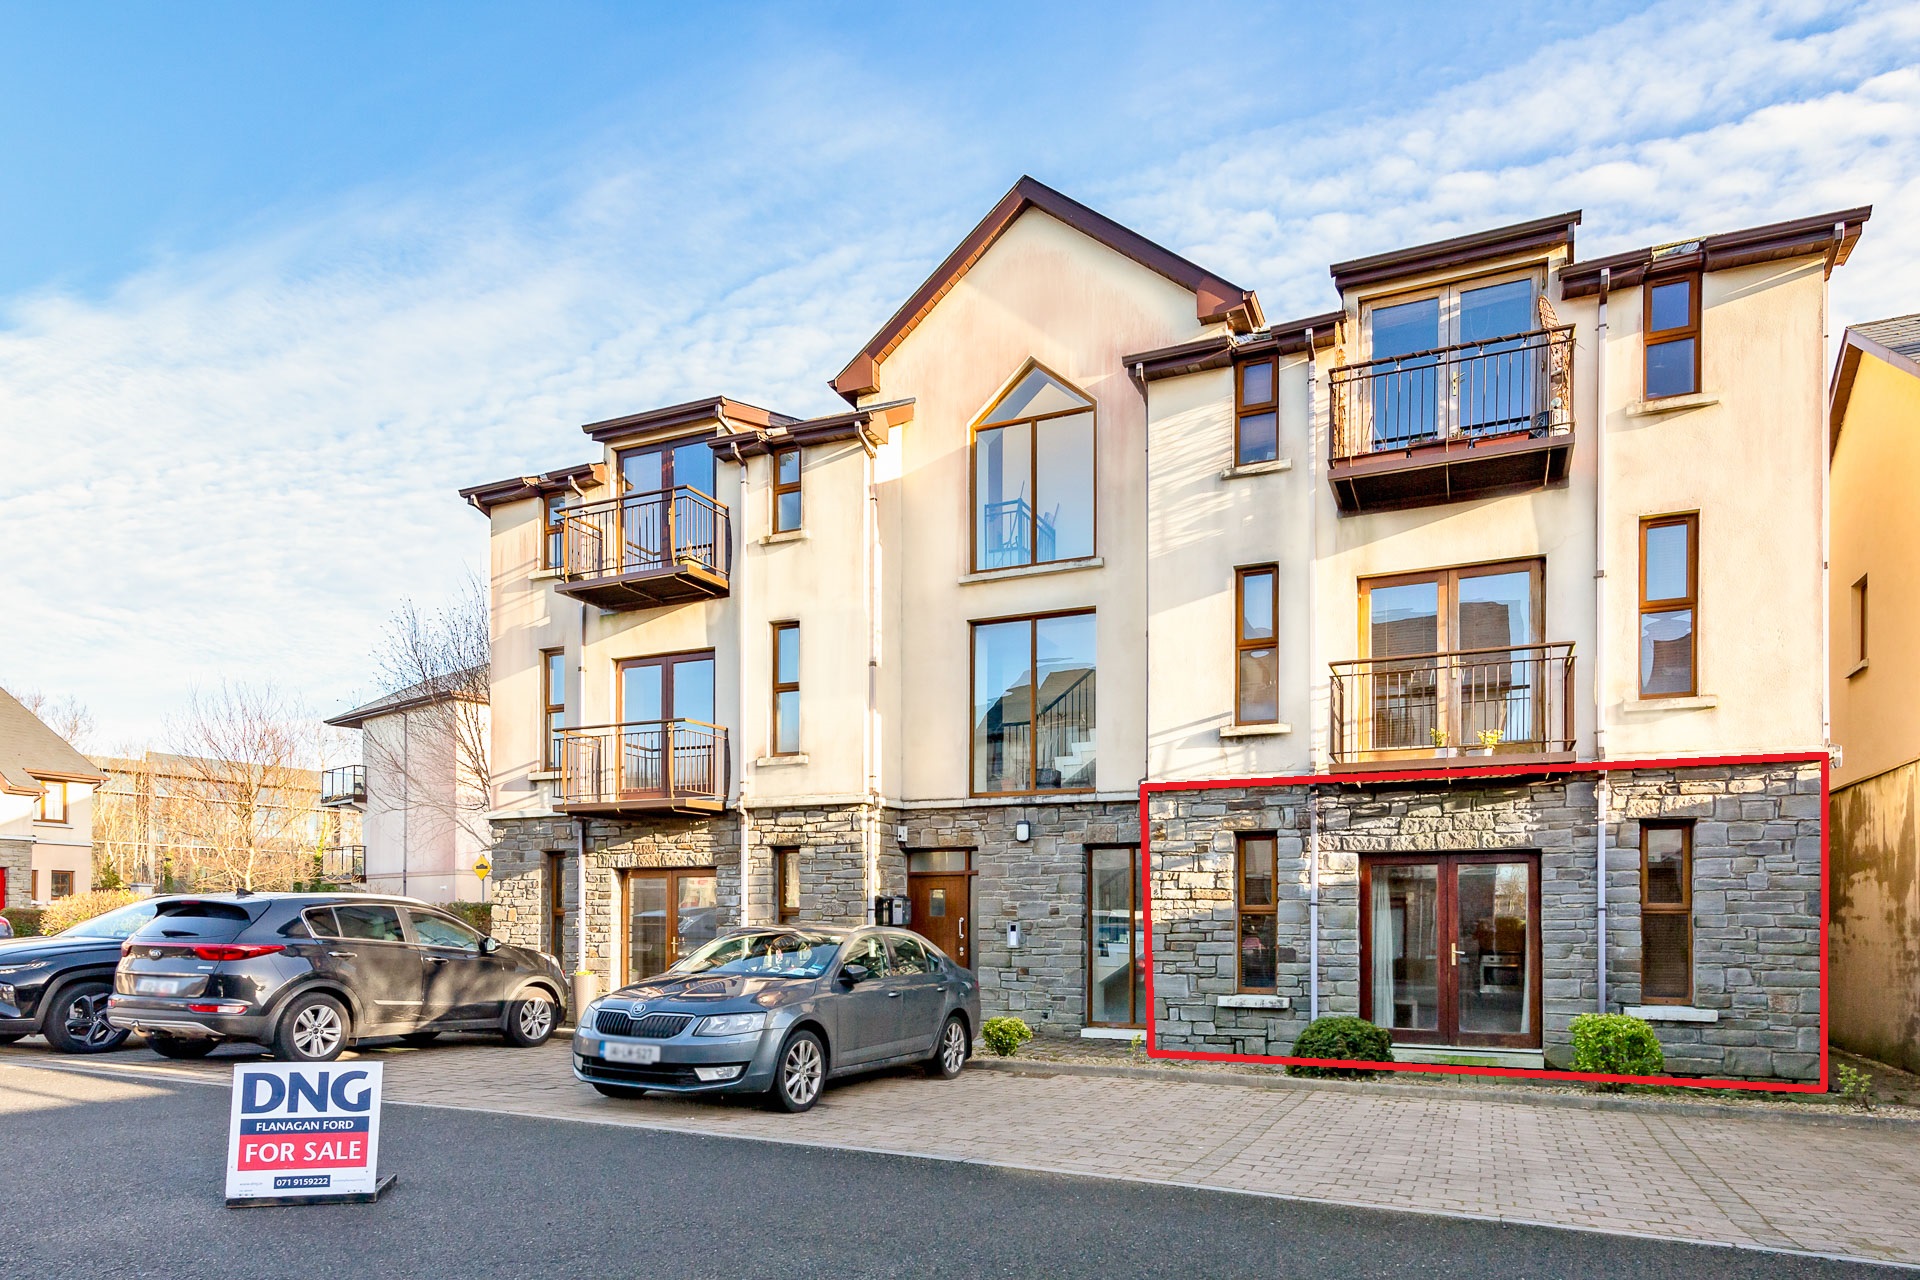 Apartment 2 Ocean Court, Prospect Drive, Brooklawns, Sligo, Co. Sligo, F91 CX26, Ireland